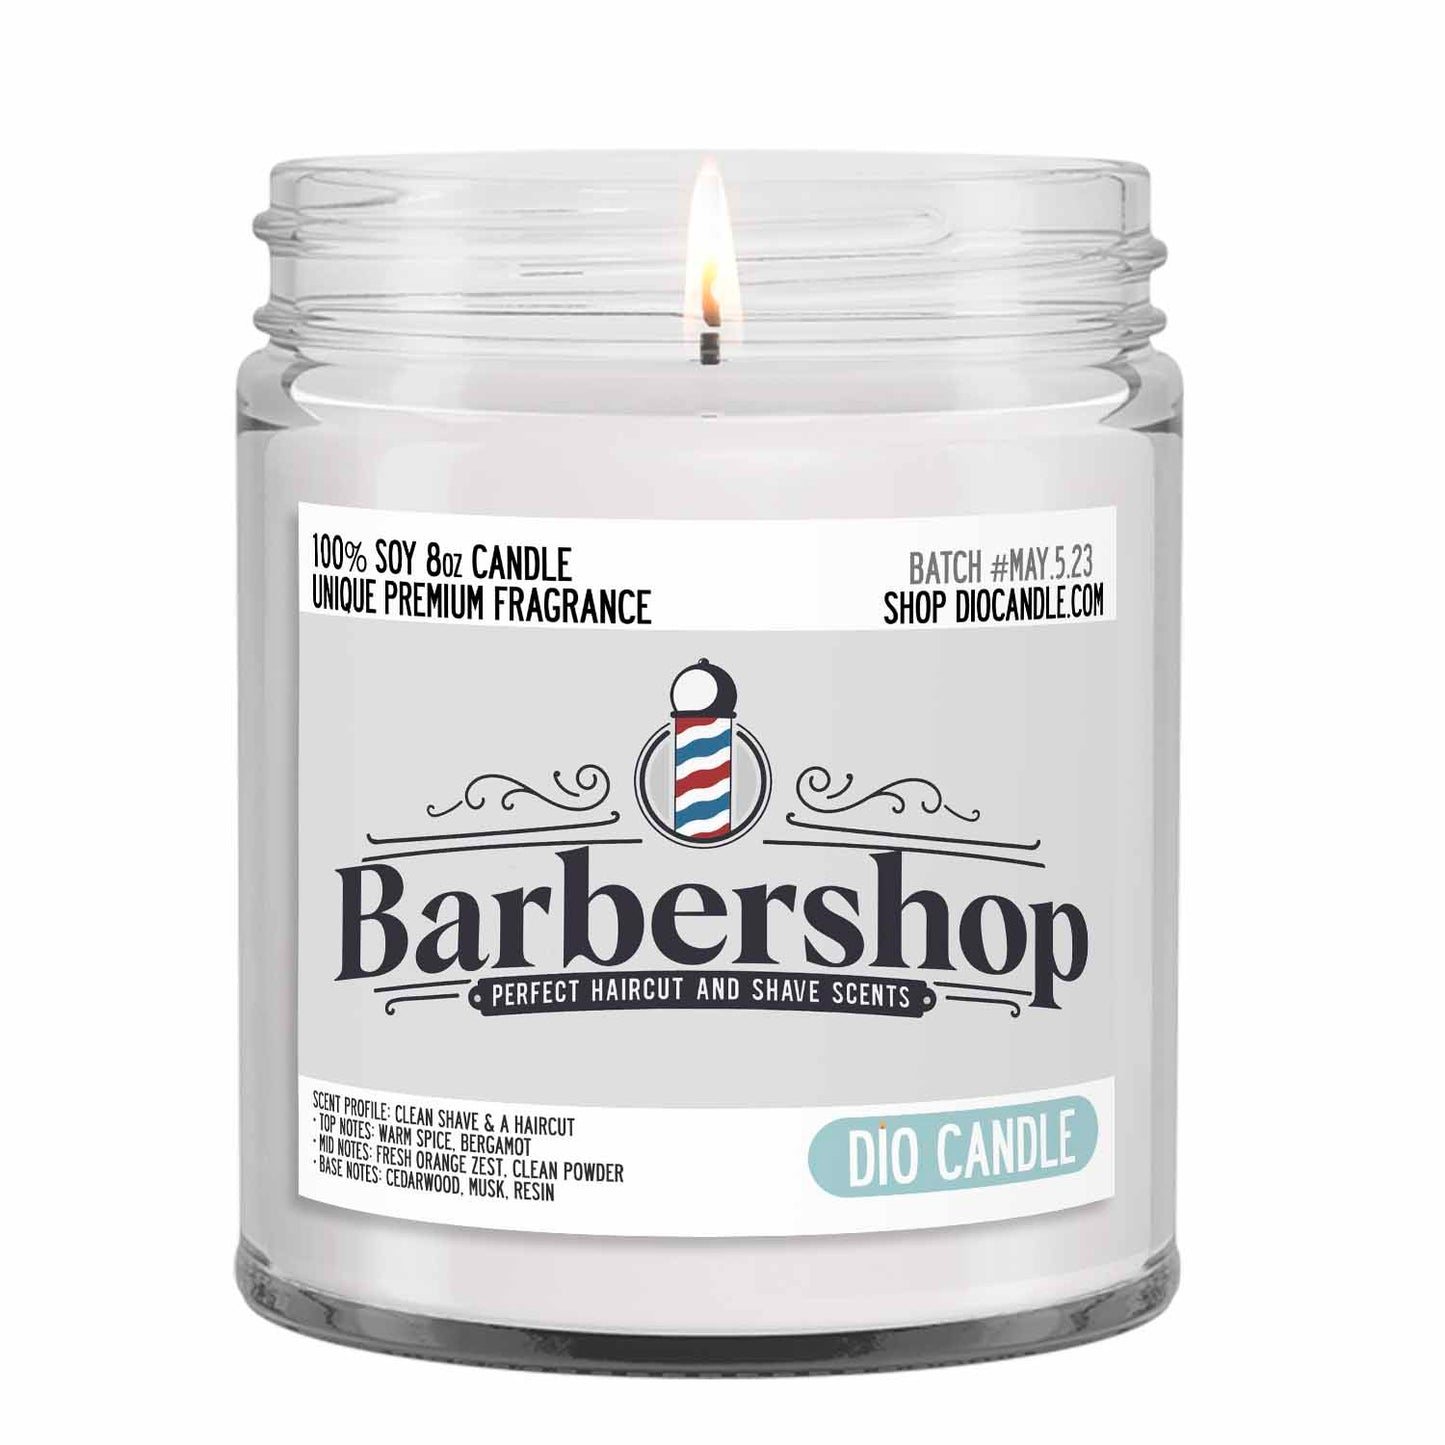 Barbershop Candle